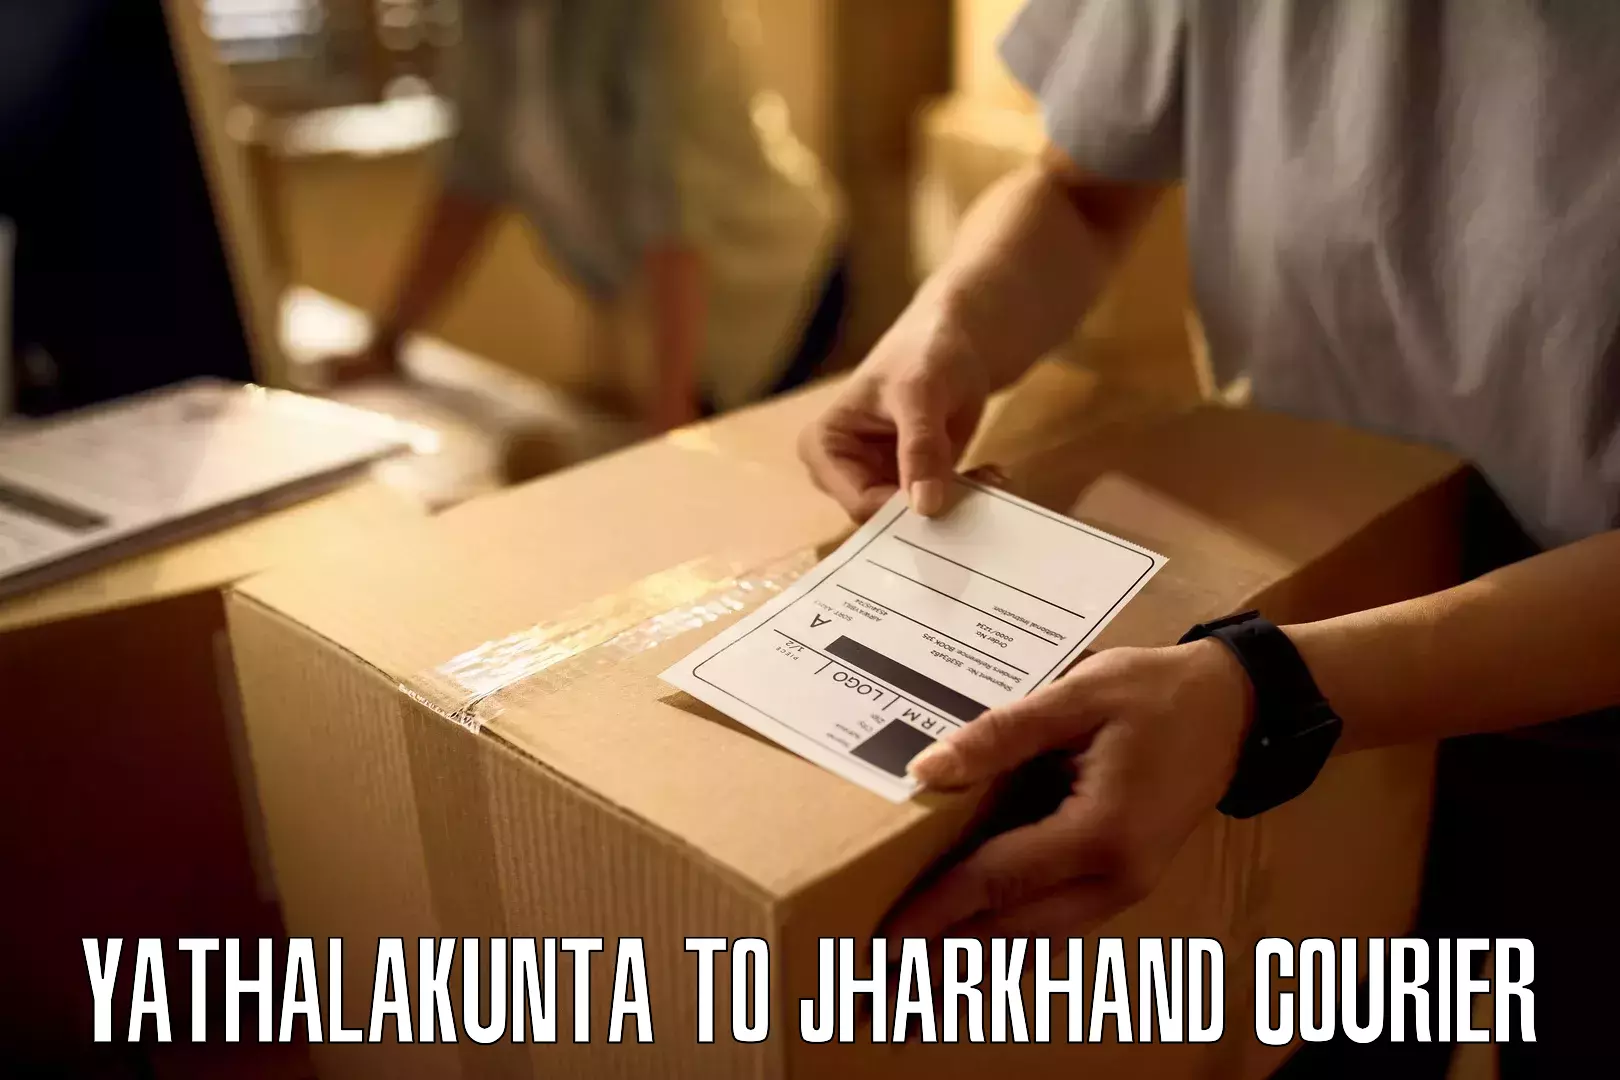 Nationwide delivery network Yathalakunta to Satbarwa